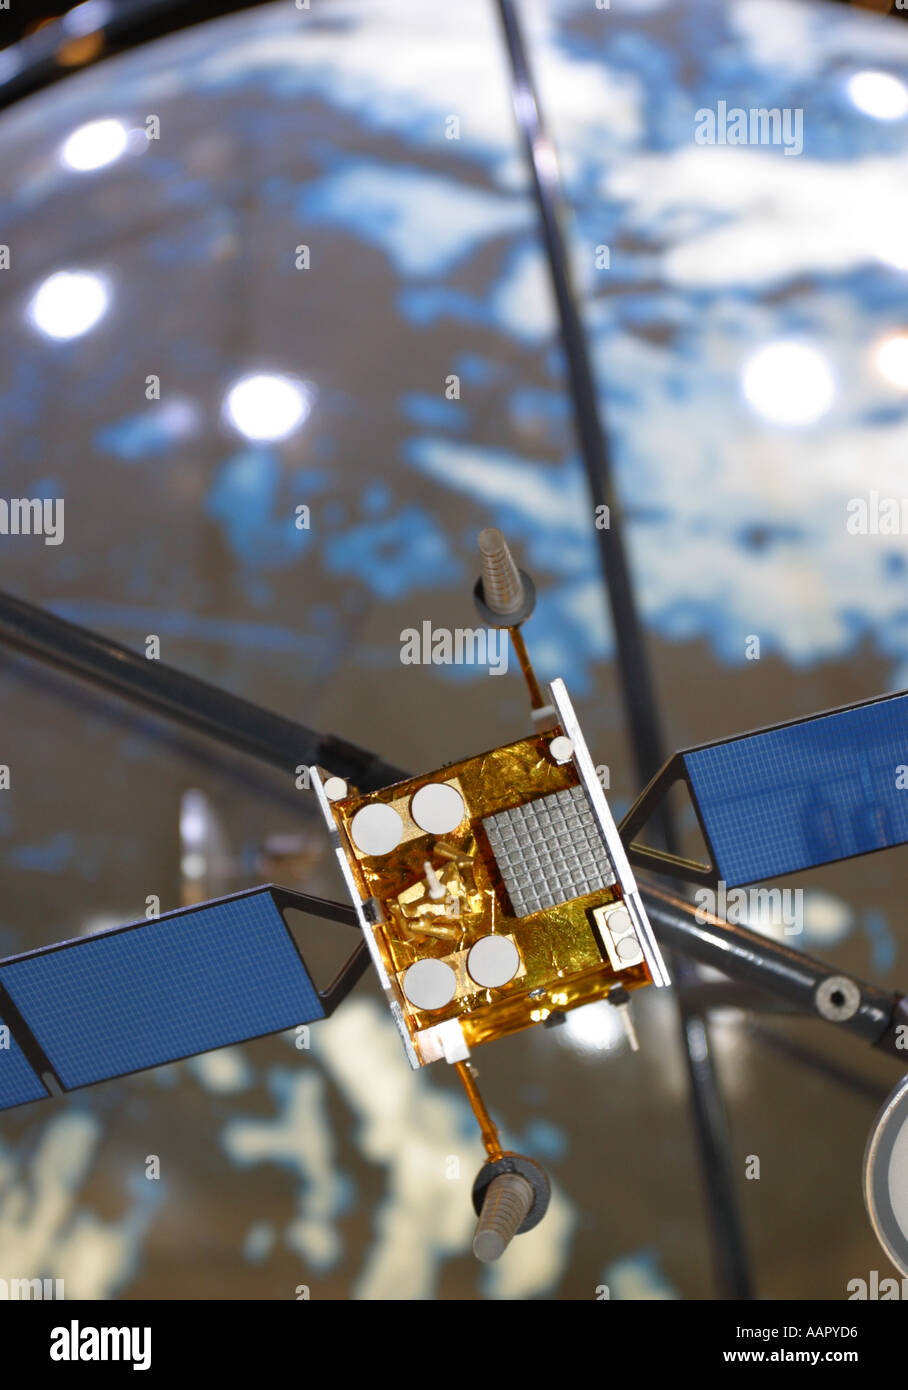 Modèle de satellite de communication en orbite autour de la Terre Banque D'Images